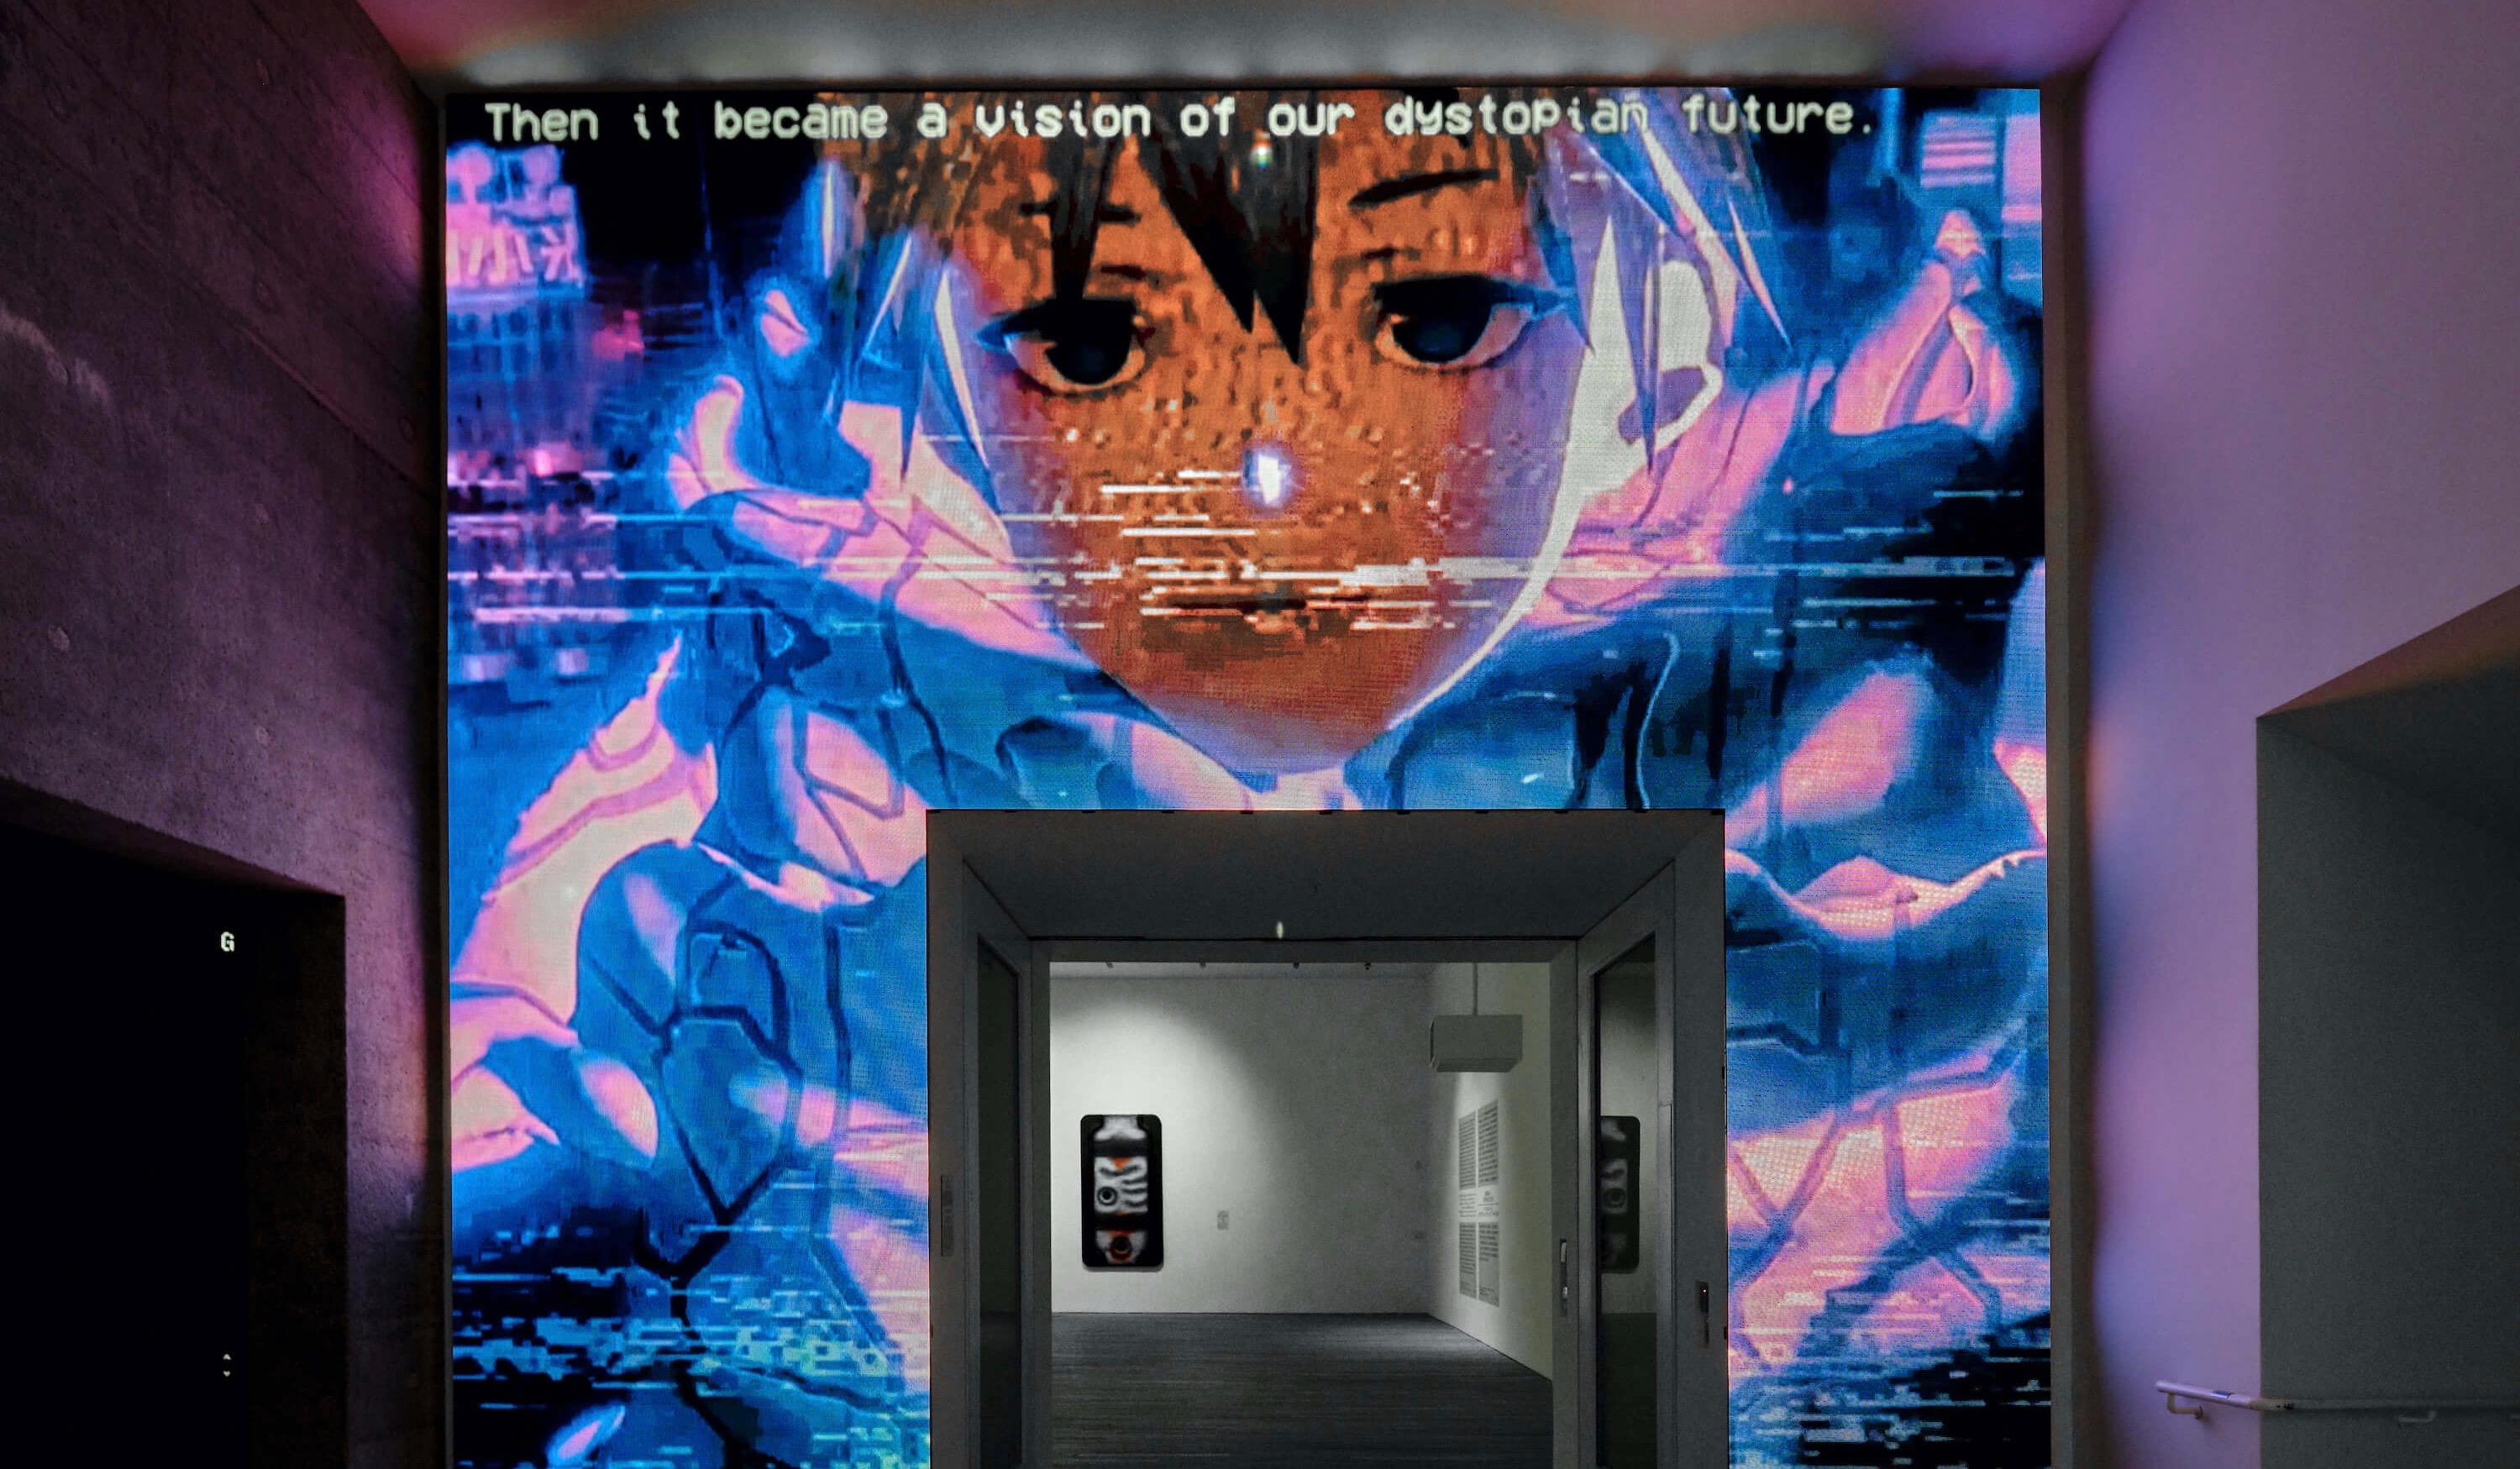 ブレードランナー Akiraの世界観 サイバーパンク 各国現代アーティストの作品に人間 機械の近未来を想ふ Heaps